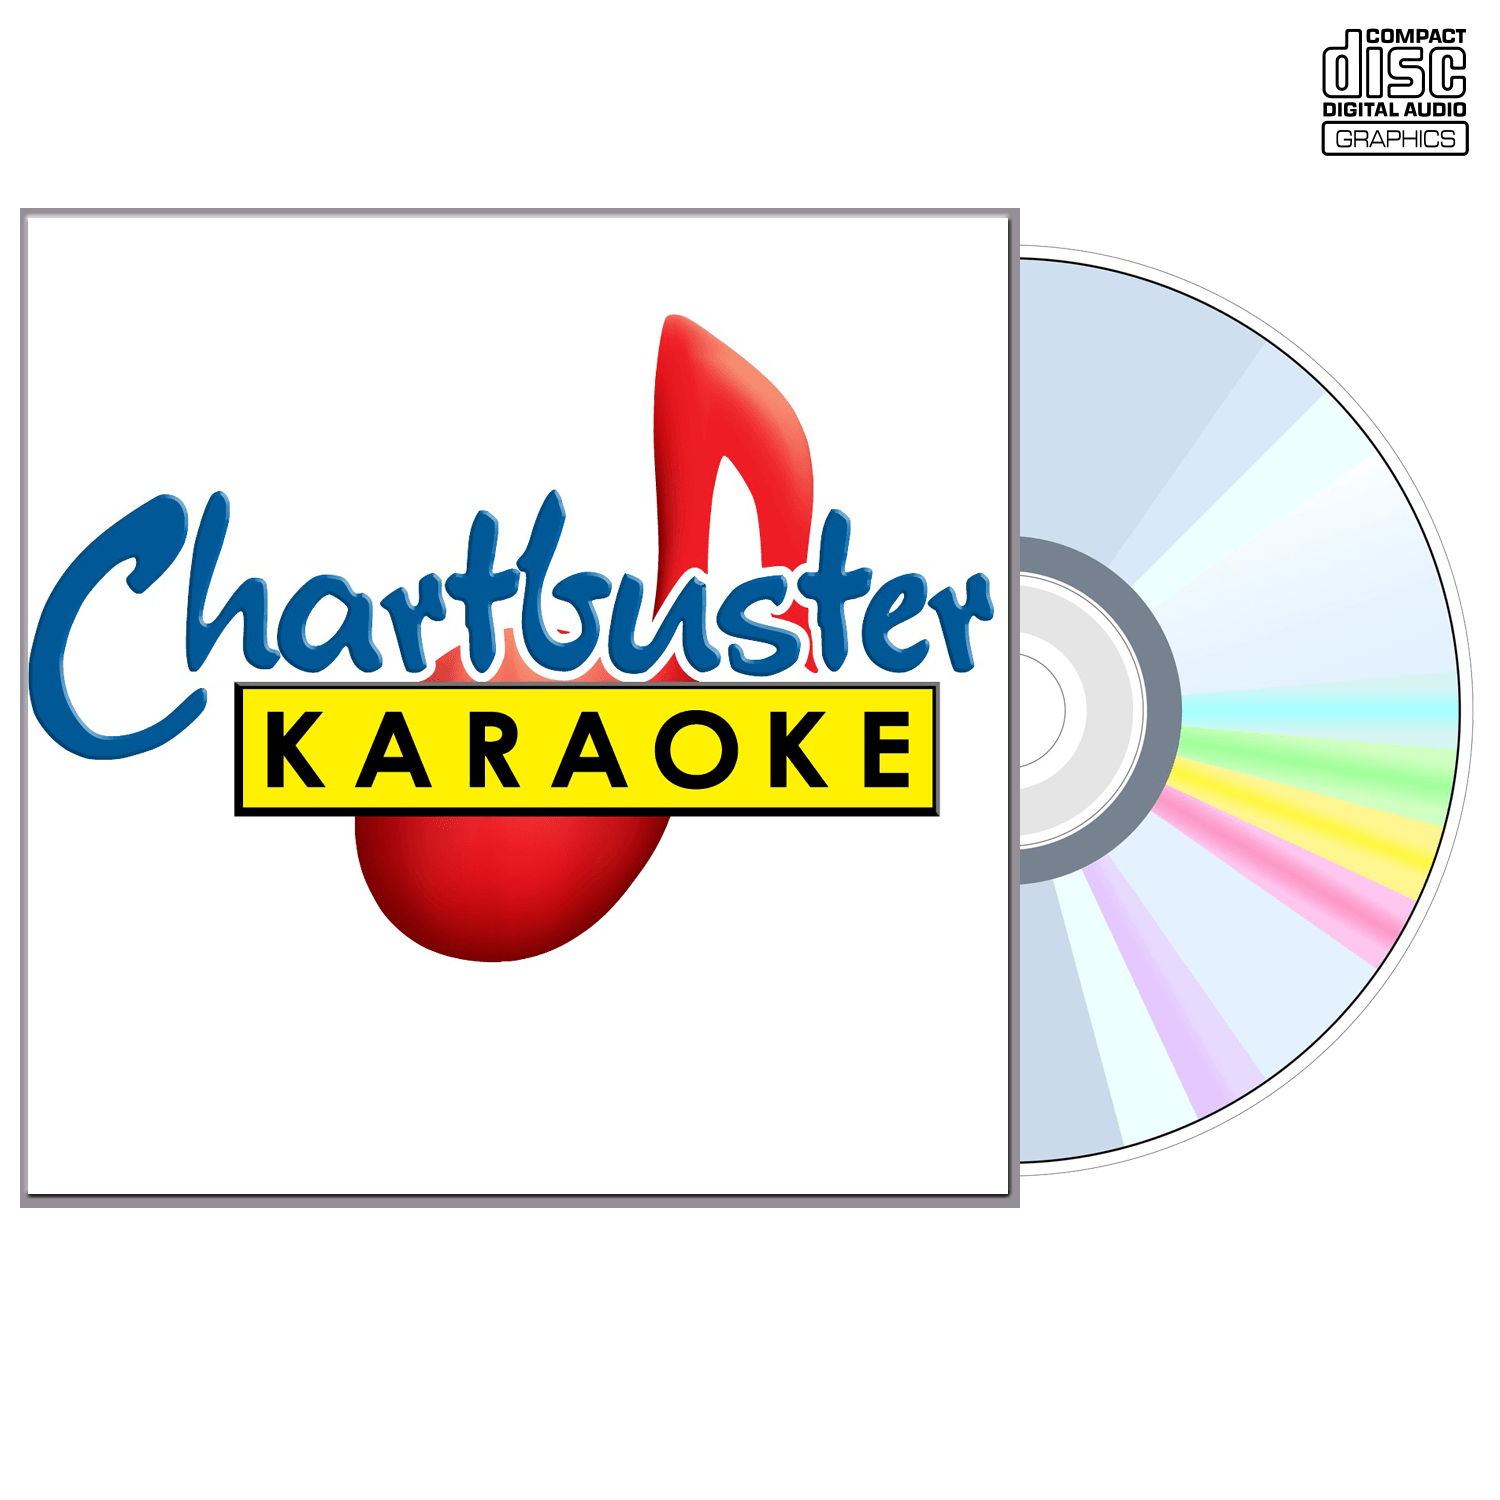 Confederate Railroad - CD+G - Chartbuster Karaoke - Karaoke Home Entertainment